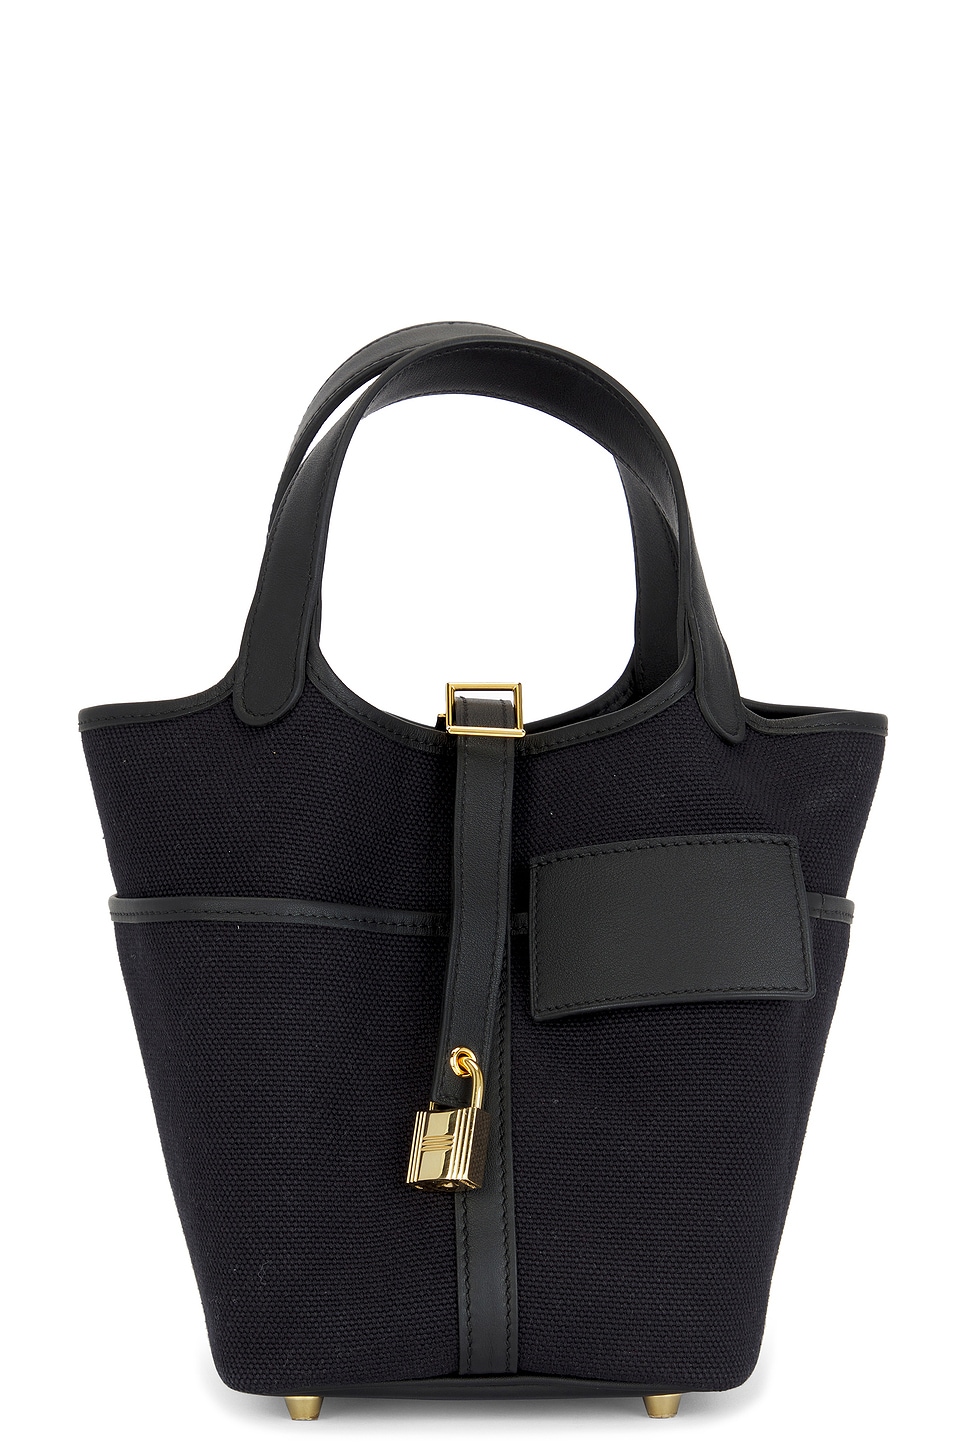 Picotin Lock Handbag in Black